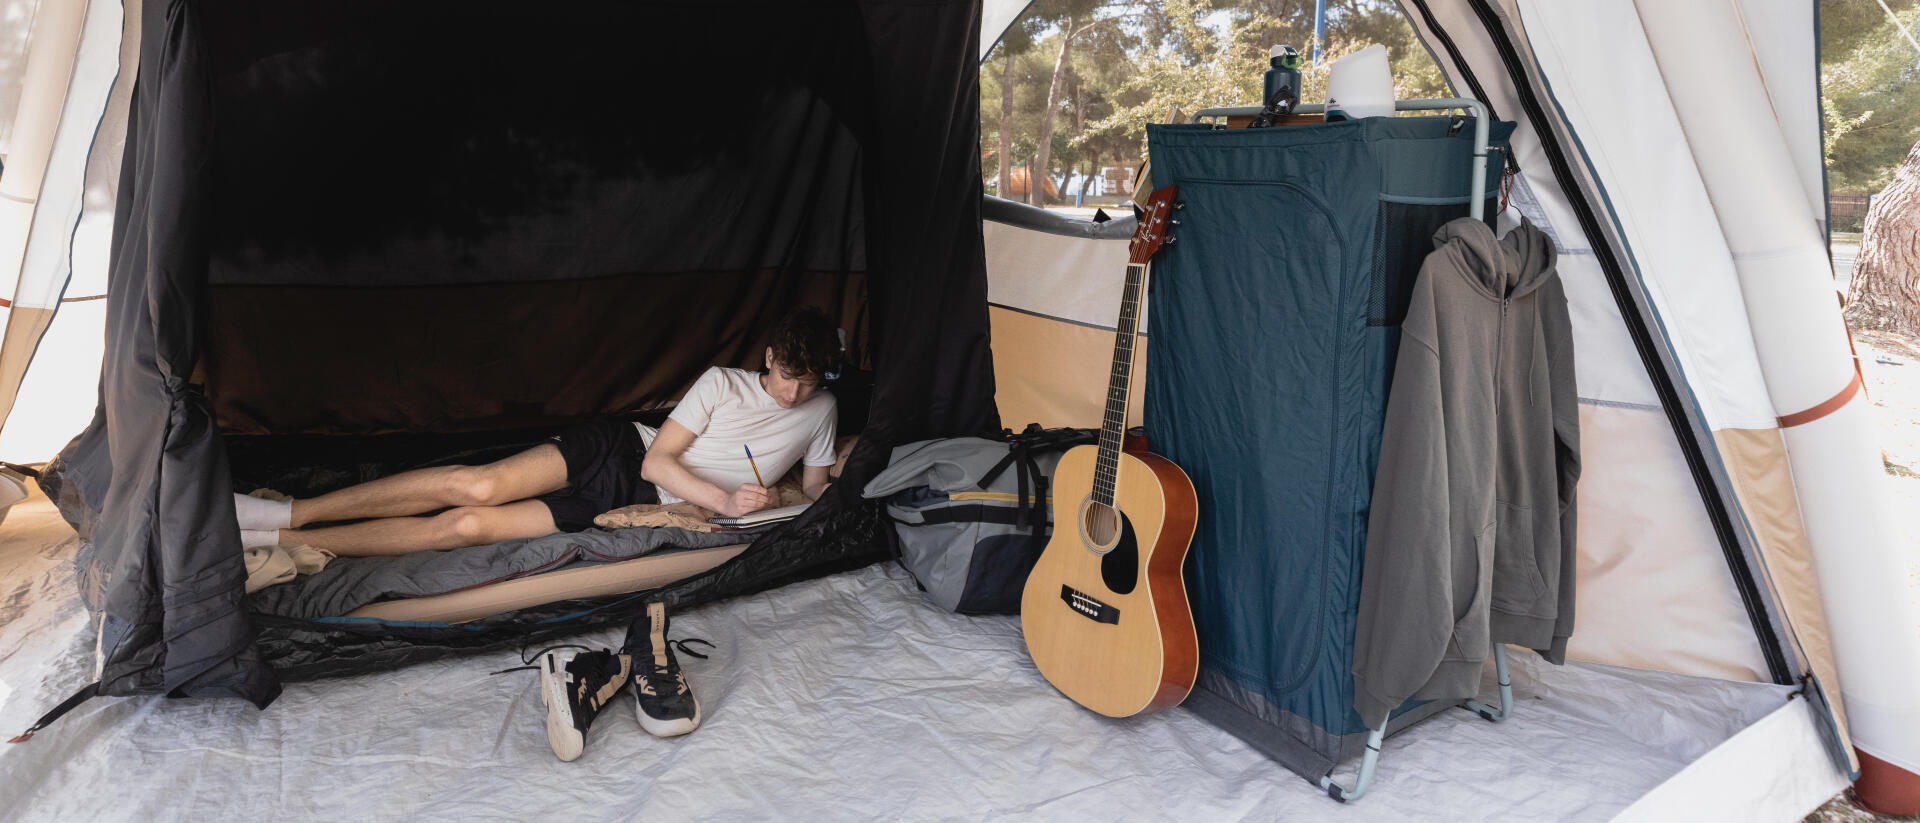 jovem rapaz dentro de uma tenda a escrever 